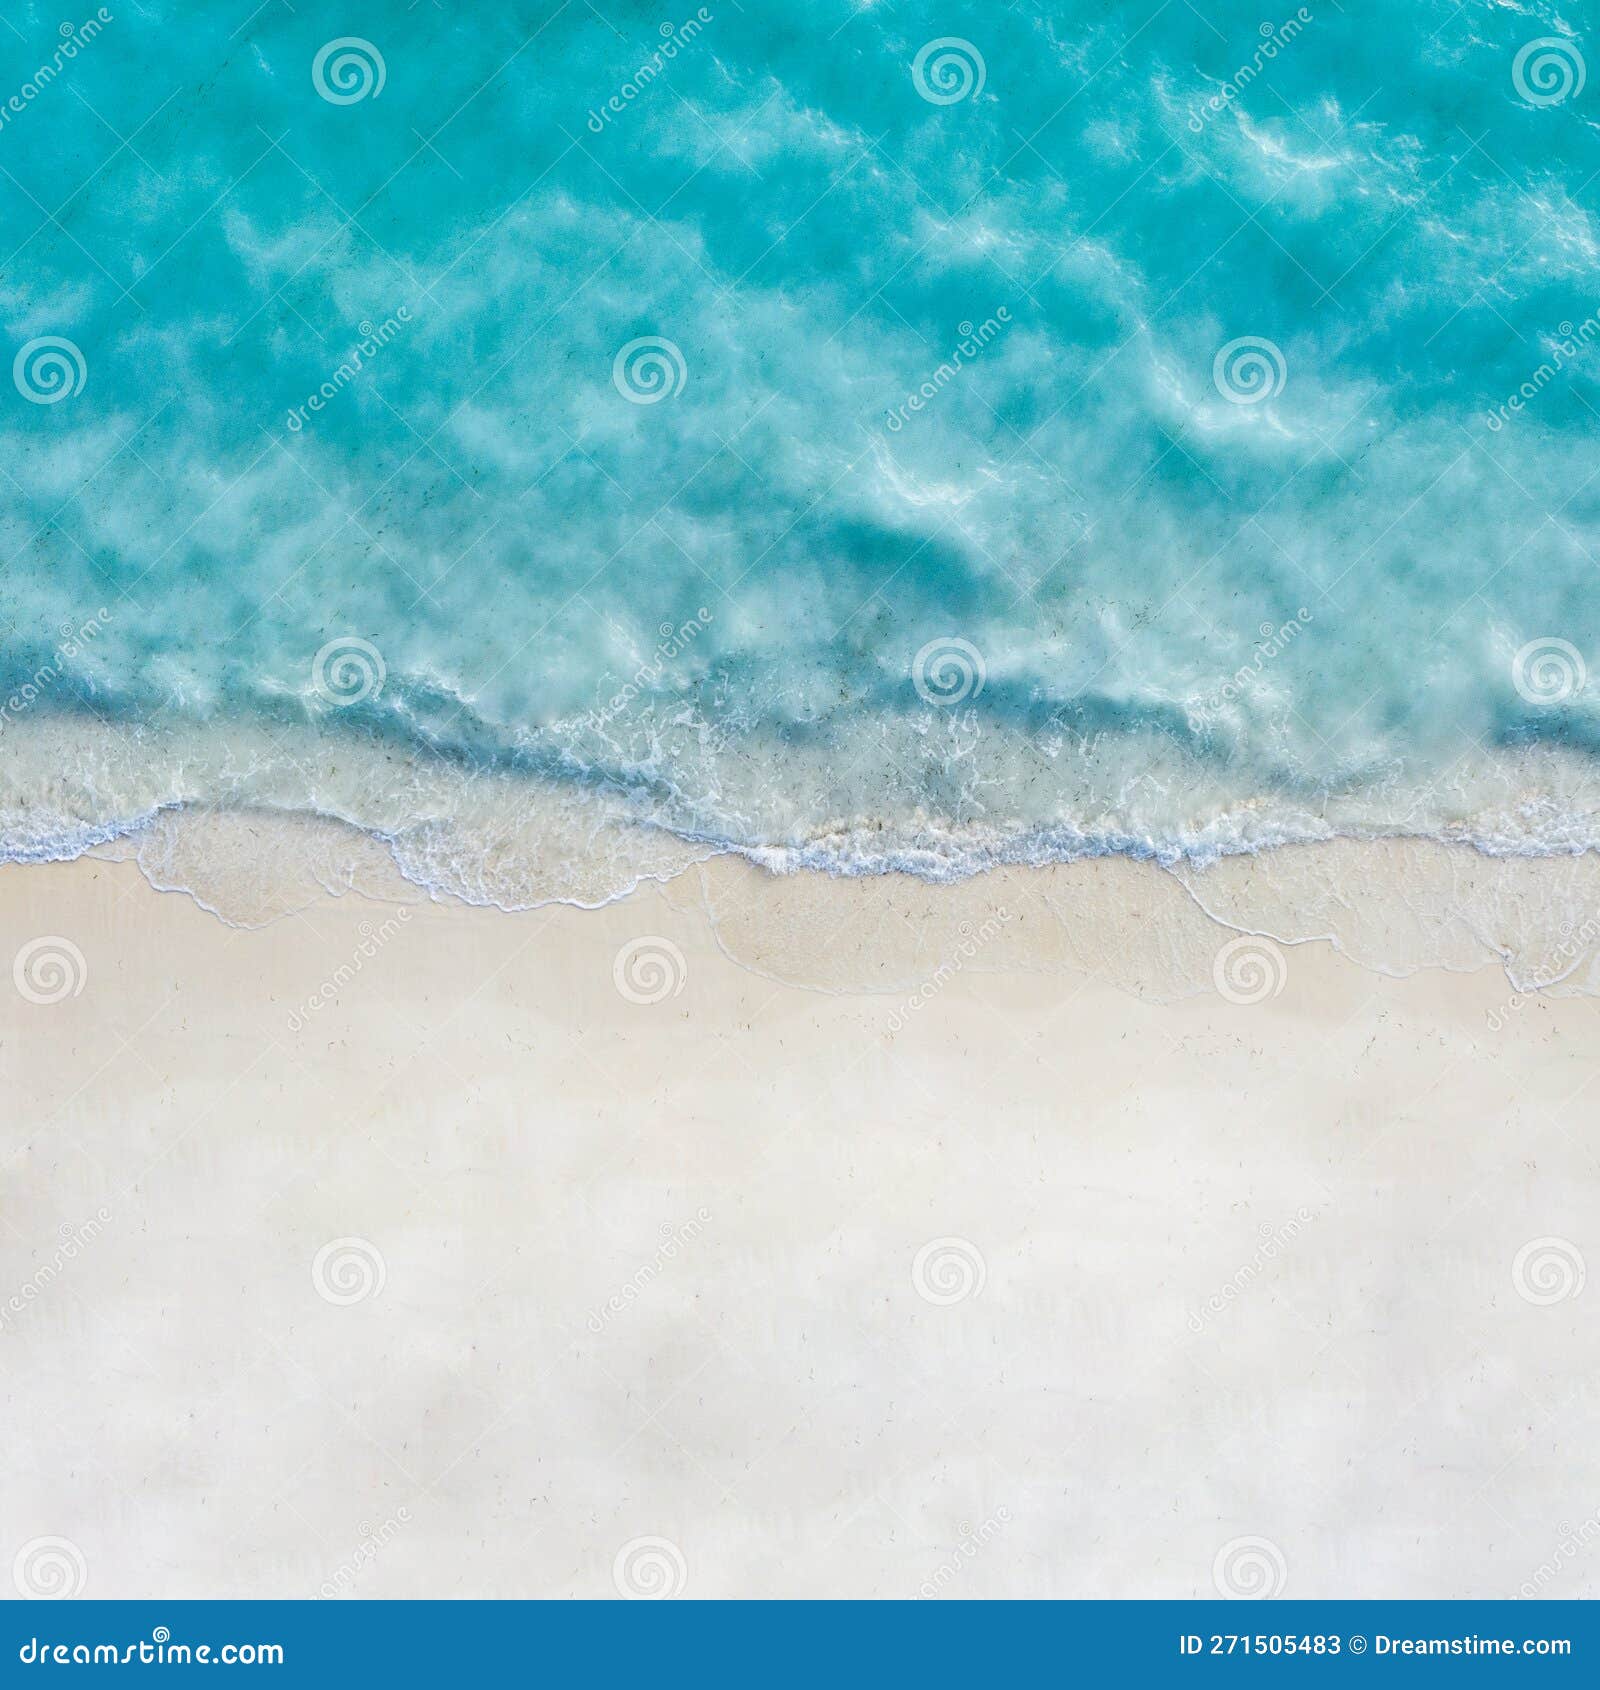 无人机视图. 白沙滩蓝海背景海浪气泡纹理与复制空间度假概念库存图片